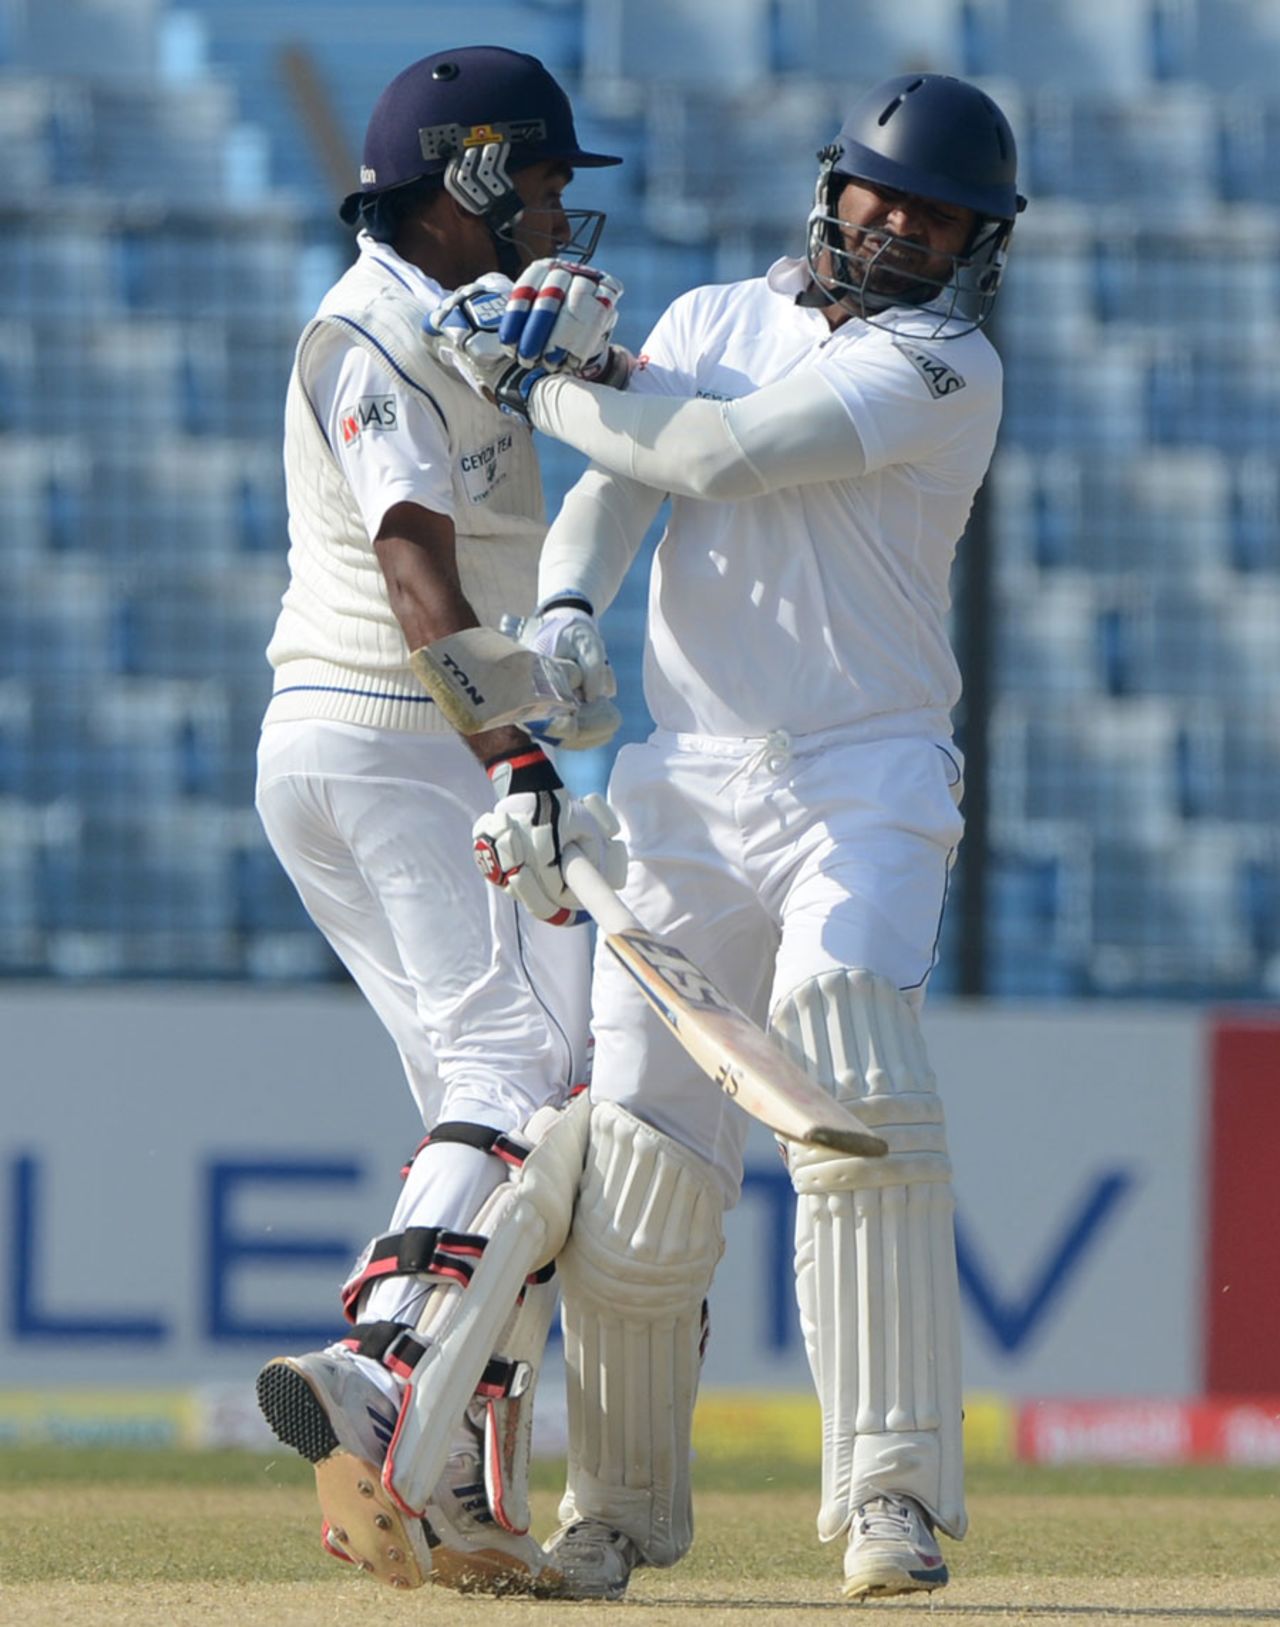 Mahela Jayawardene and Kumar Sangakkara collide while taking a run, Bangladesh v Sri Lanka, 2nd Test, Chittagong, 1st day, February 4, 2014